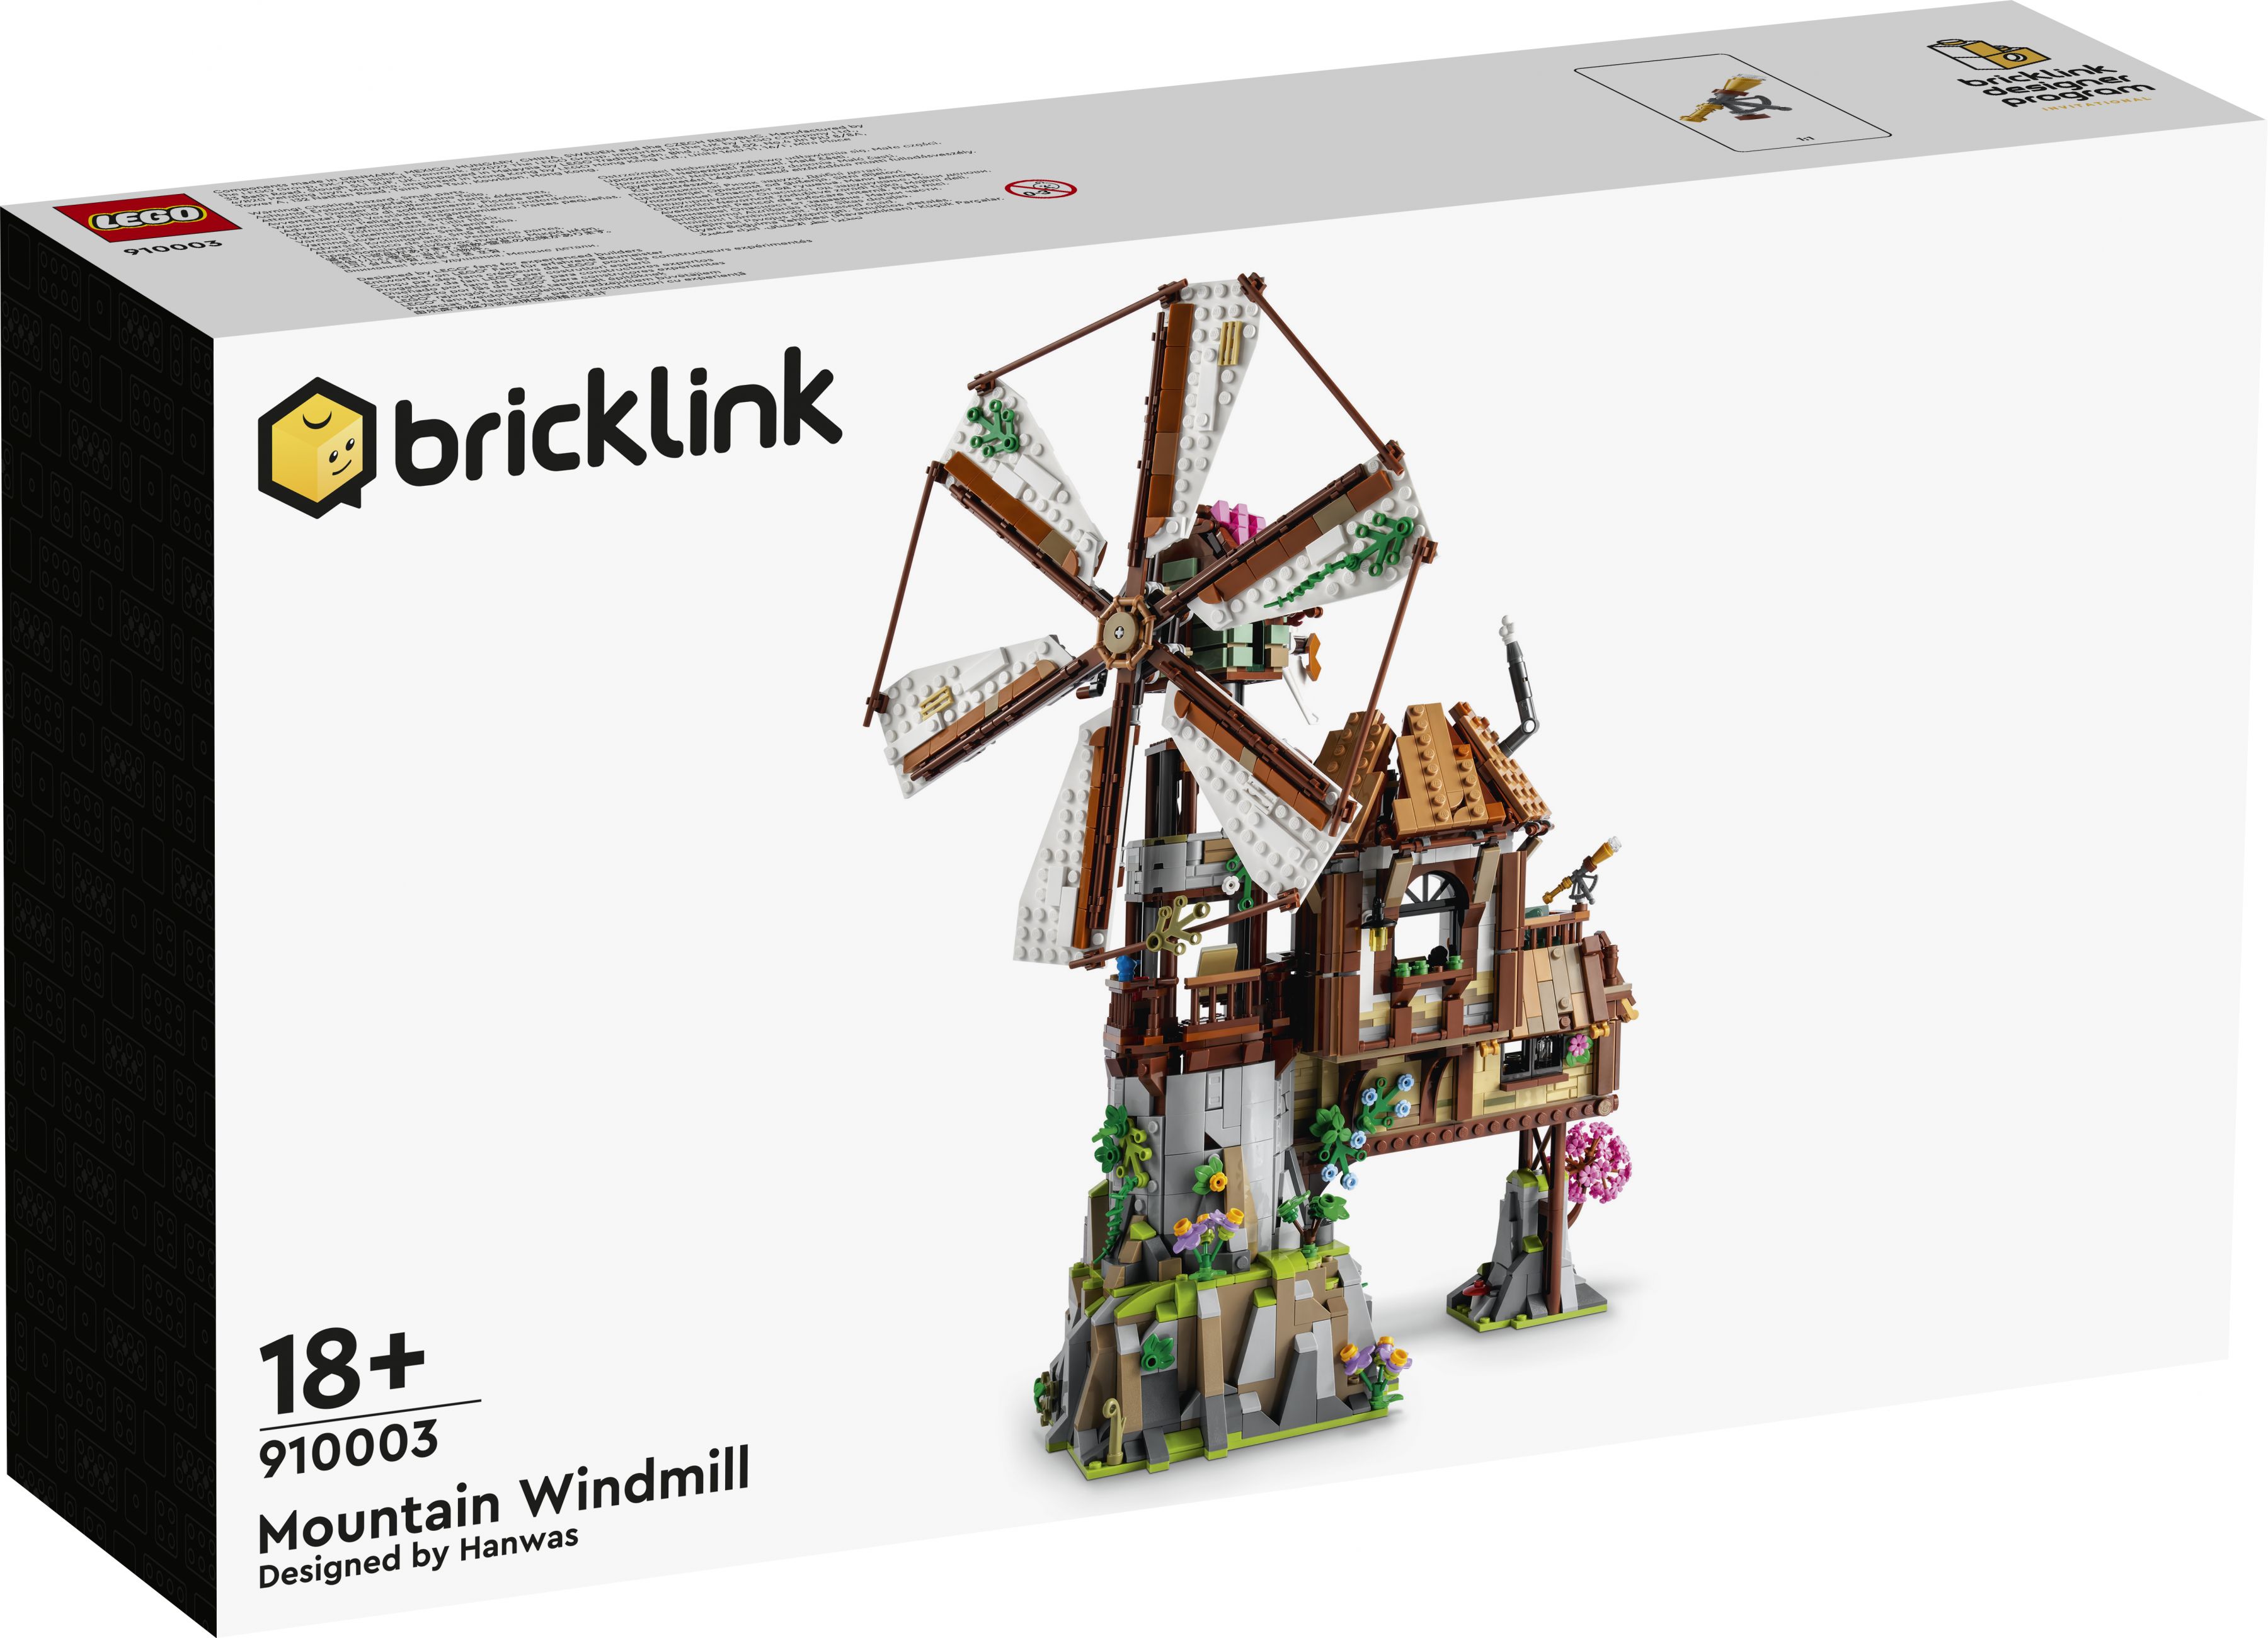 LEGO Bricklink 910003 The Mountain Windmill LEGO_910003_box1_v29.jpg